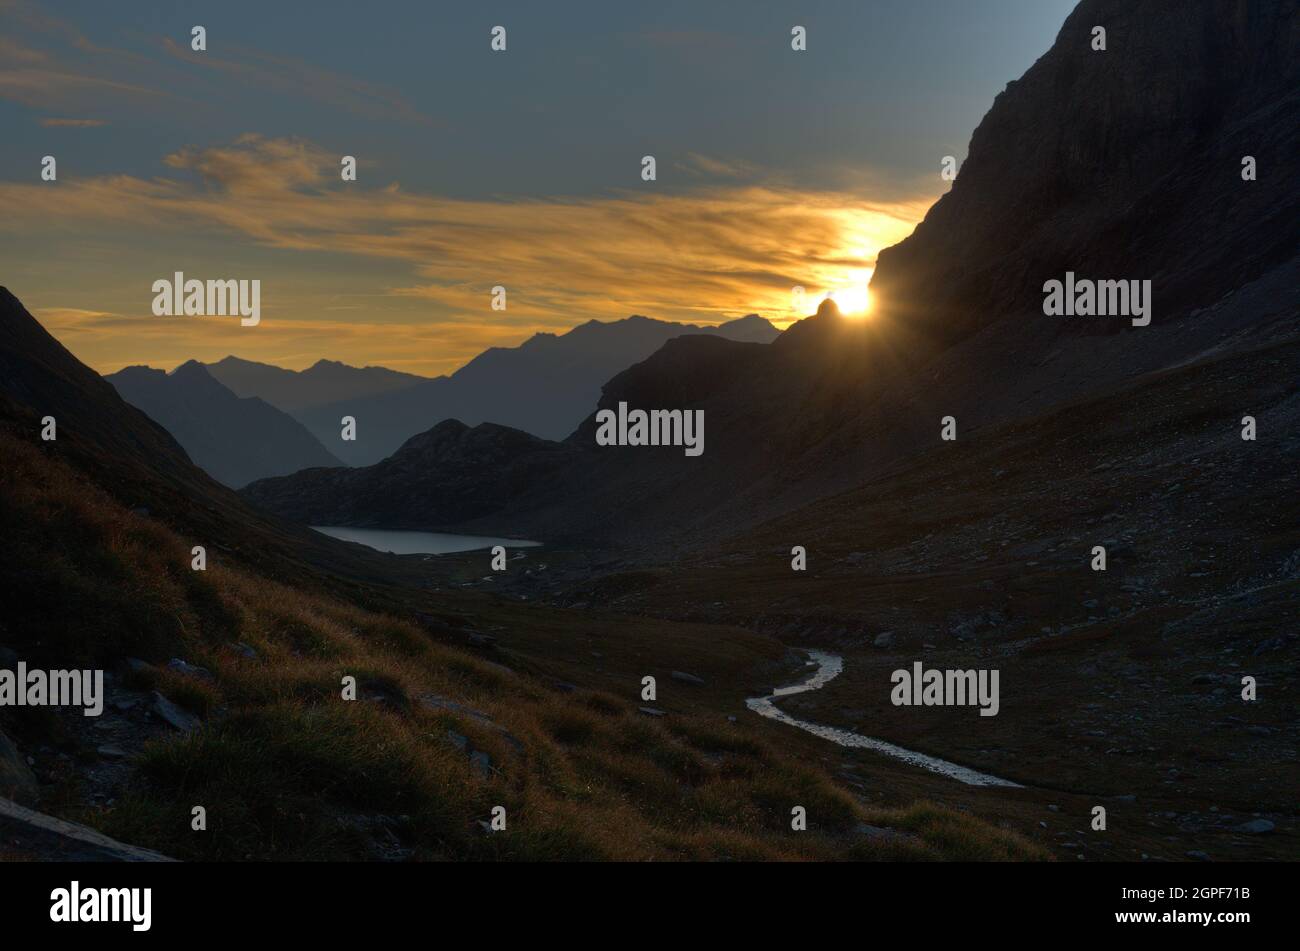 Am frühen Morgen in den Alpen: Silhouetten von Bergen in trüben Farben, ein silbriger See und ein Fluss im Vordergrund. Stockfoto